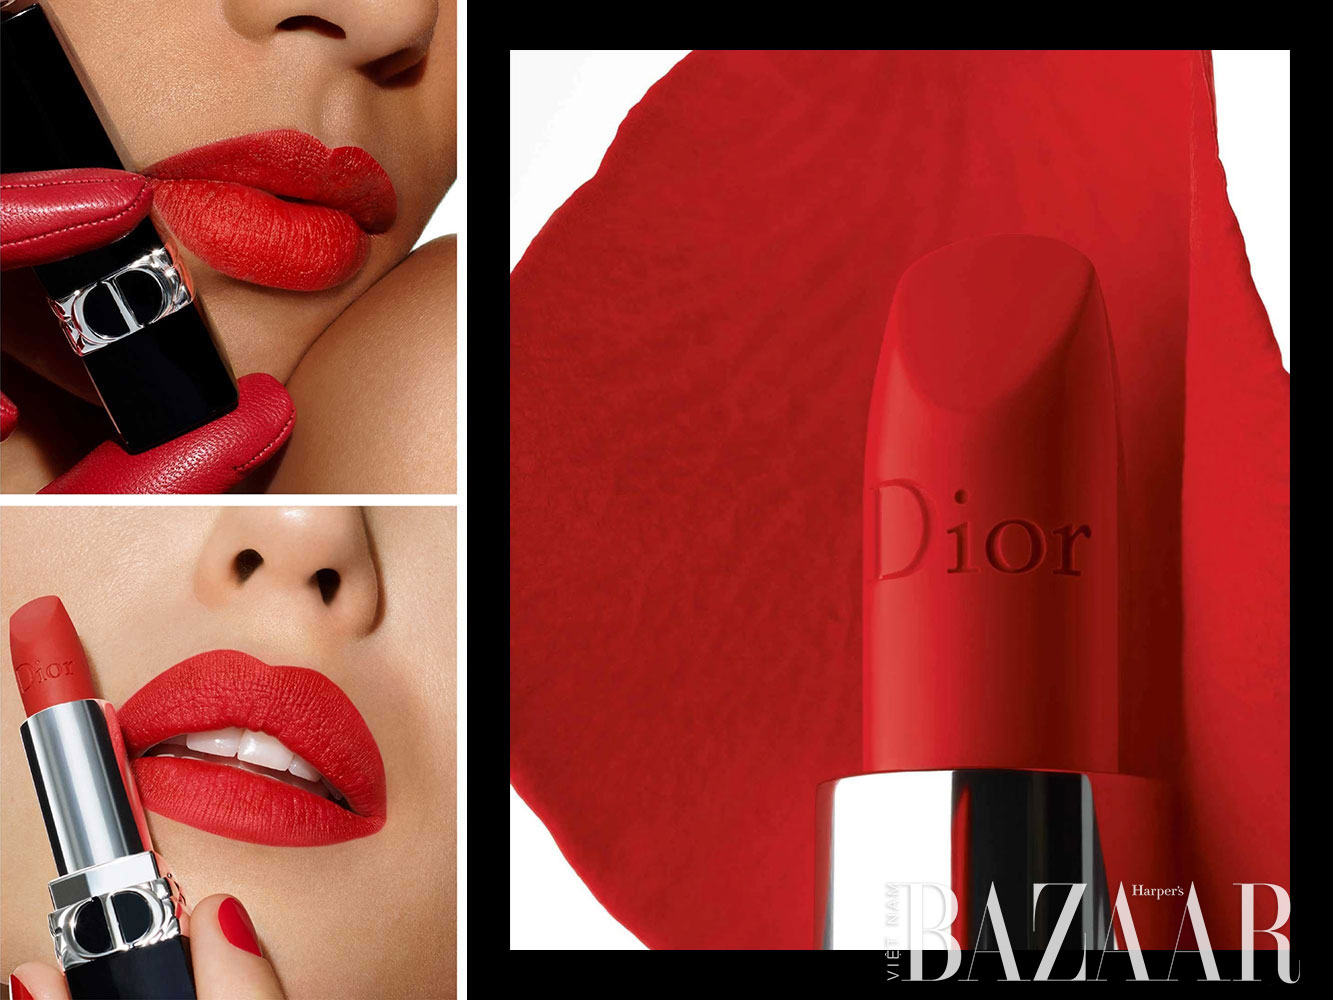 Son môi Dior luôn là lựa chọn số 1 của các cô nàng bởi chất lượng tuyệt vời và thiết kế quyến rũ. Hãy đón xem hình ảnh liên quan đến son môi Dior để cập nhật những thông tin mới nhất về sản phẩm yêu thích này.